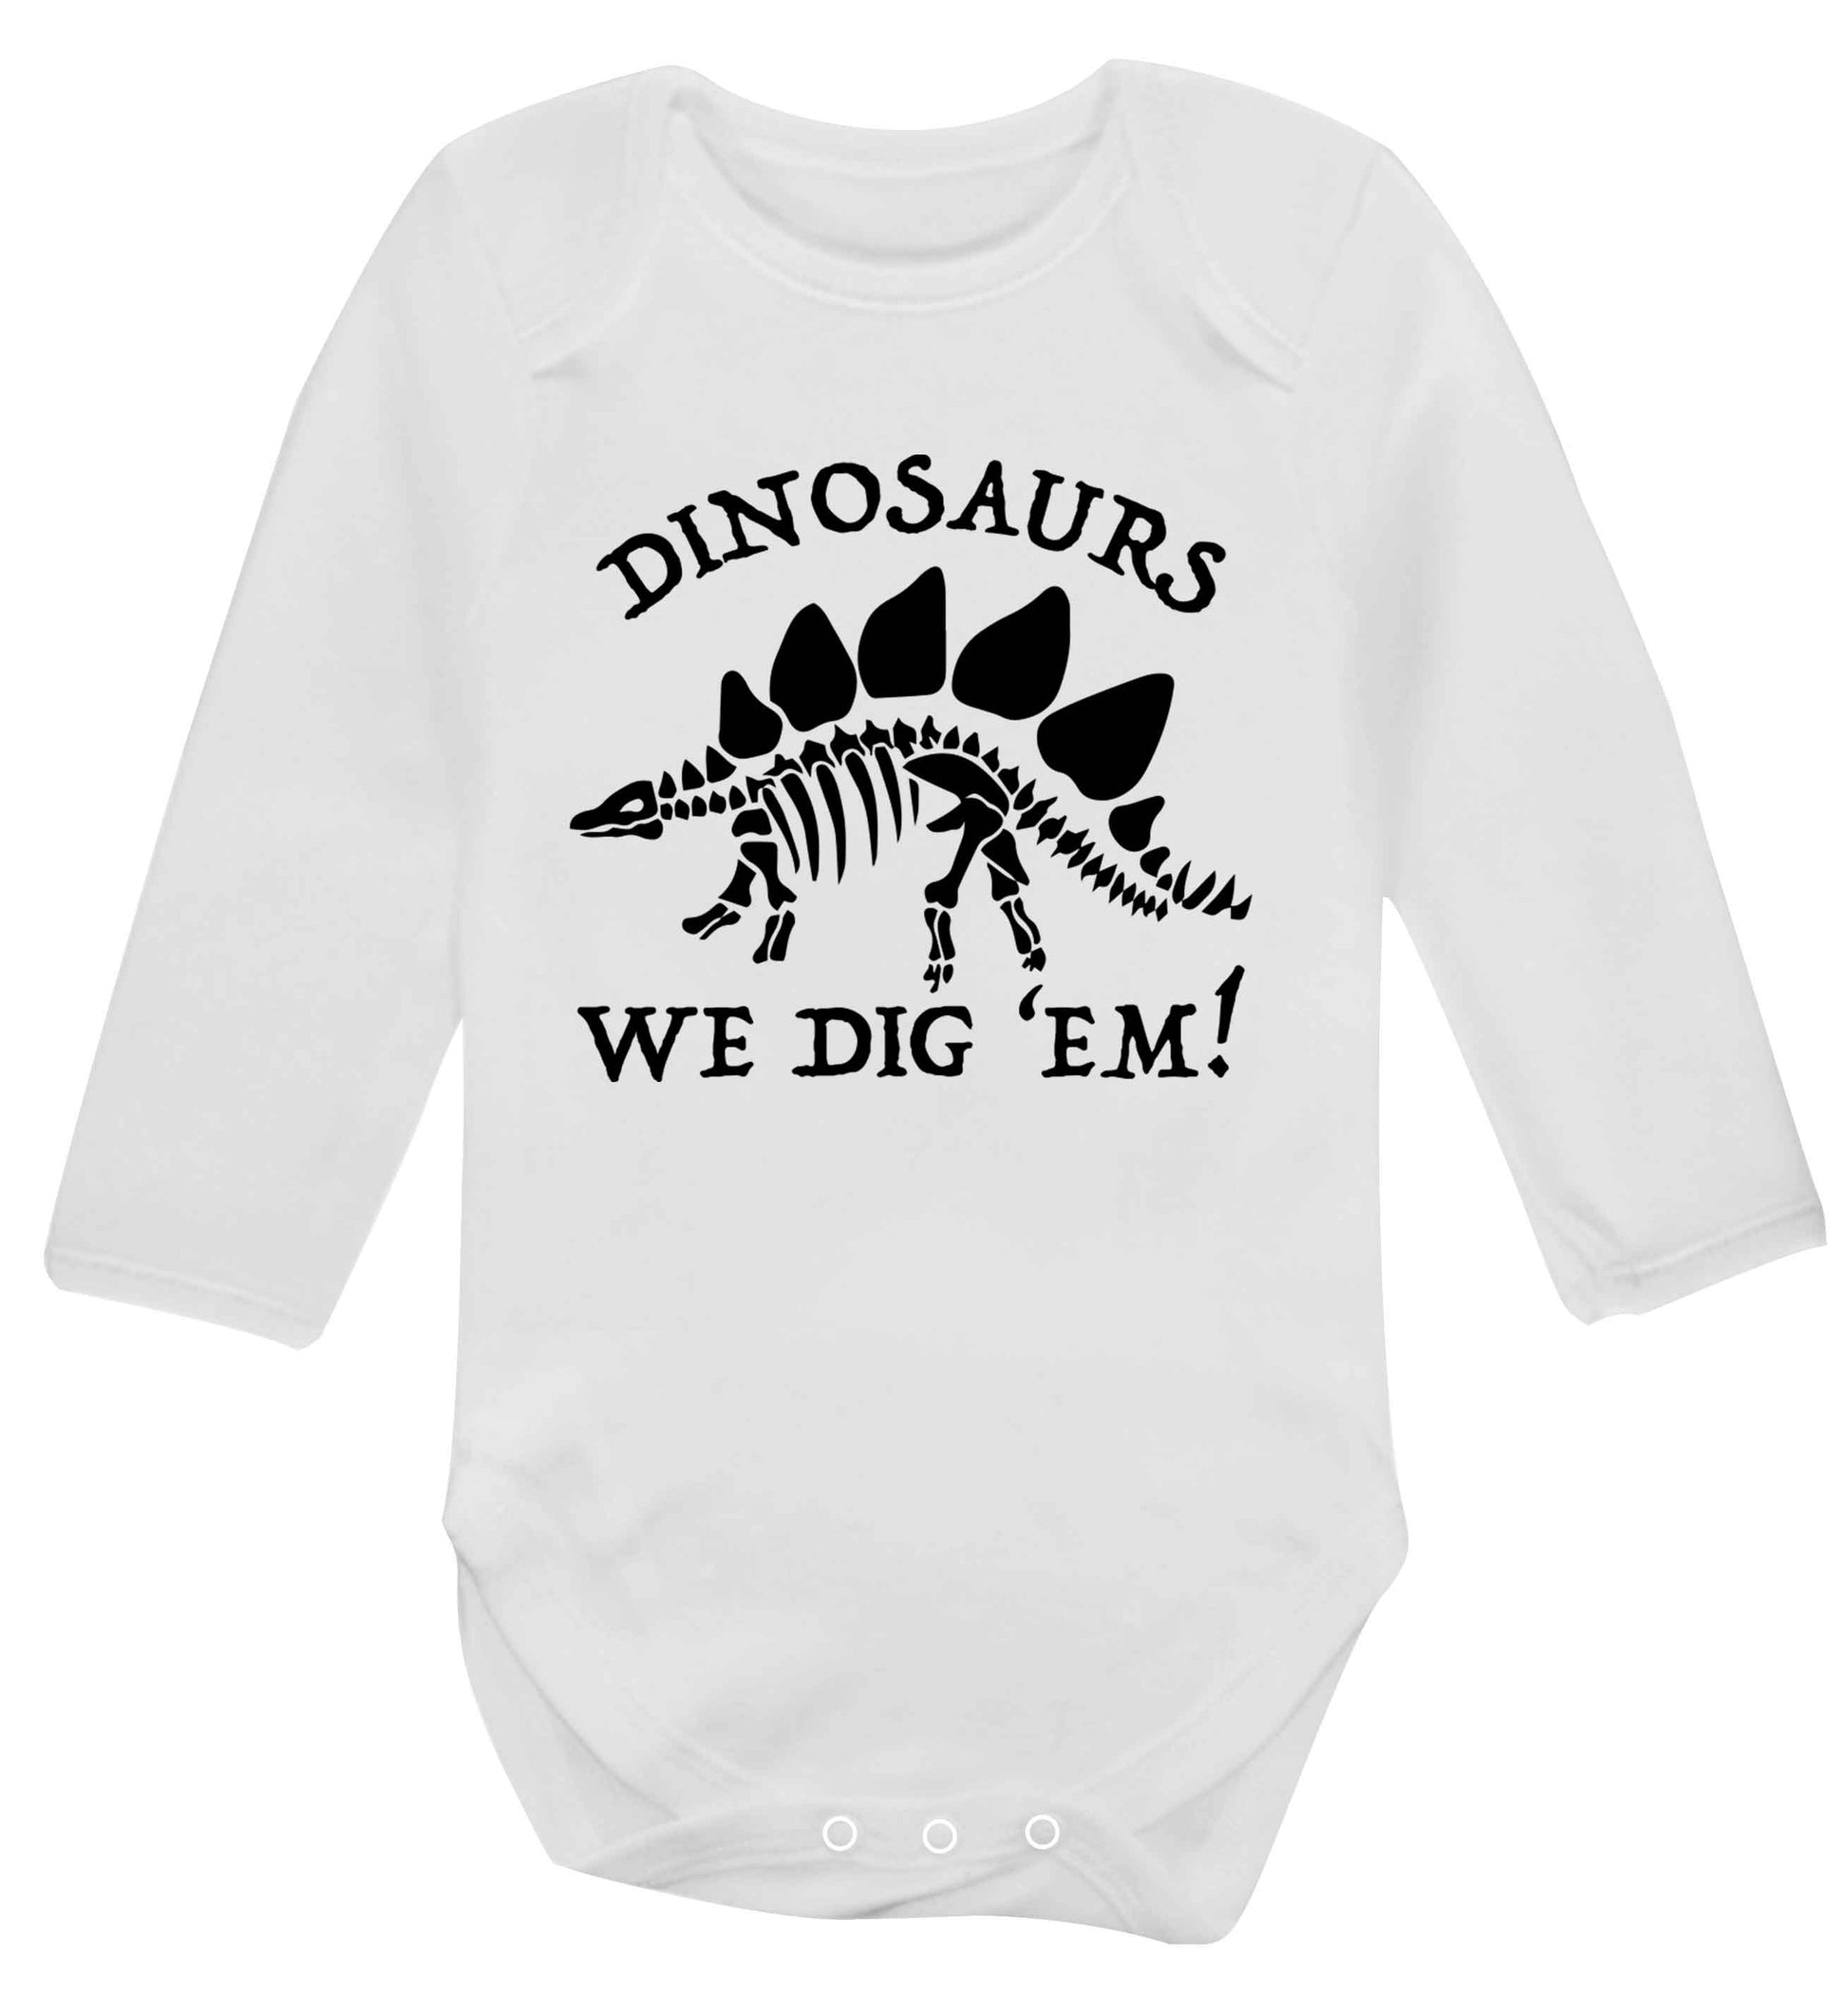 Dinosaurs we dig 'em! Baby Vest long sleeved white 6-12 months